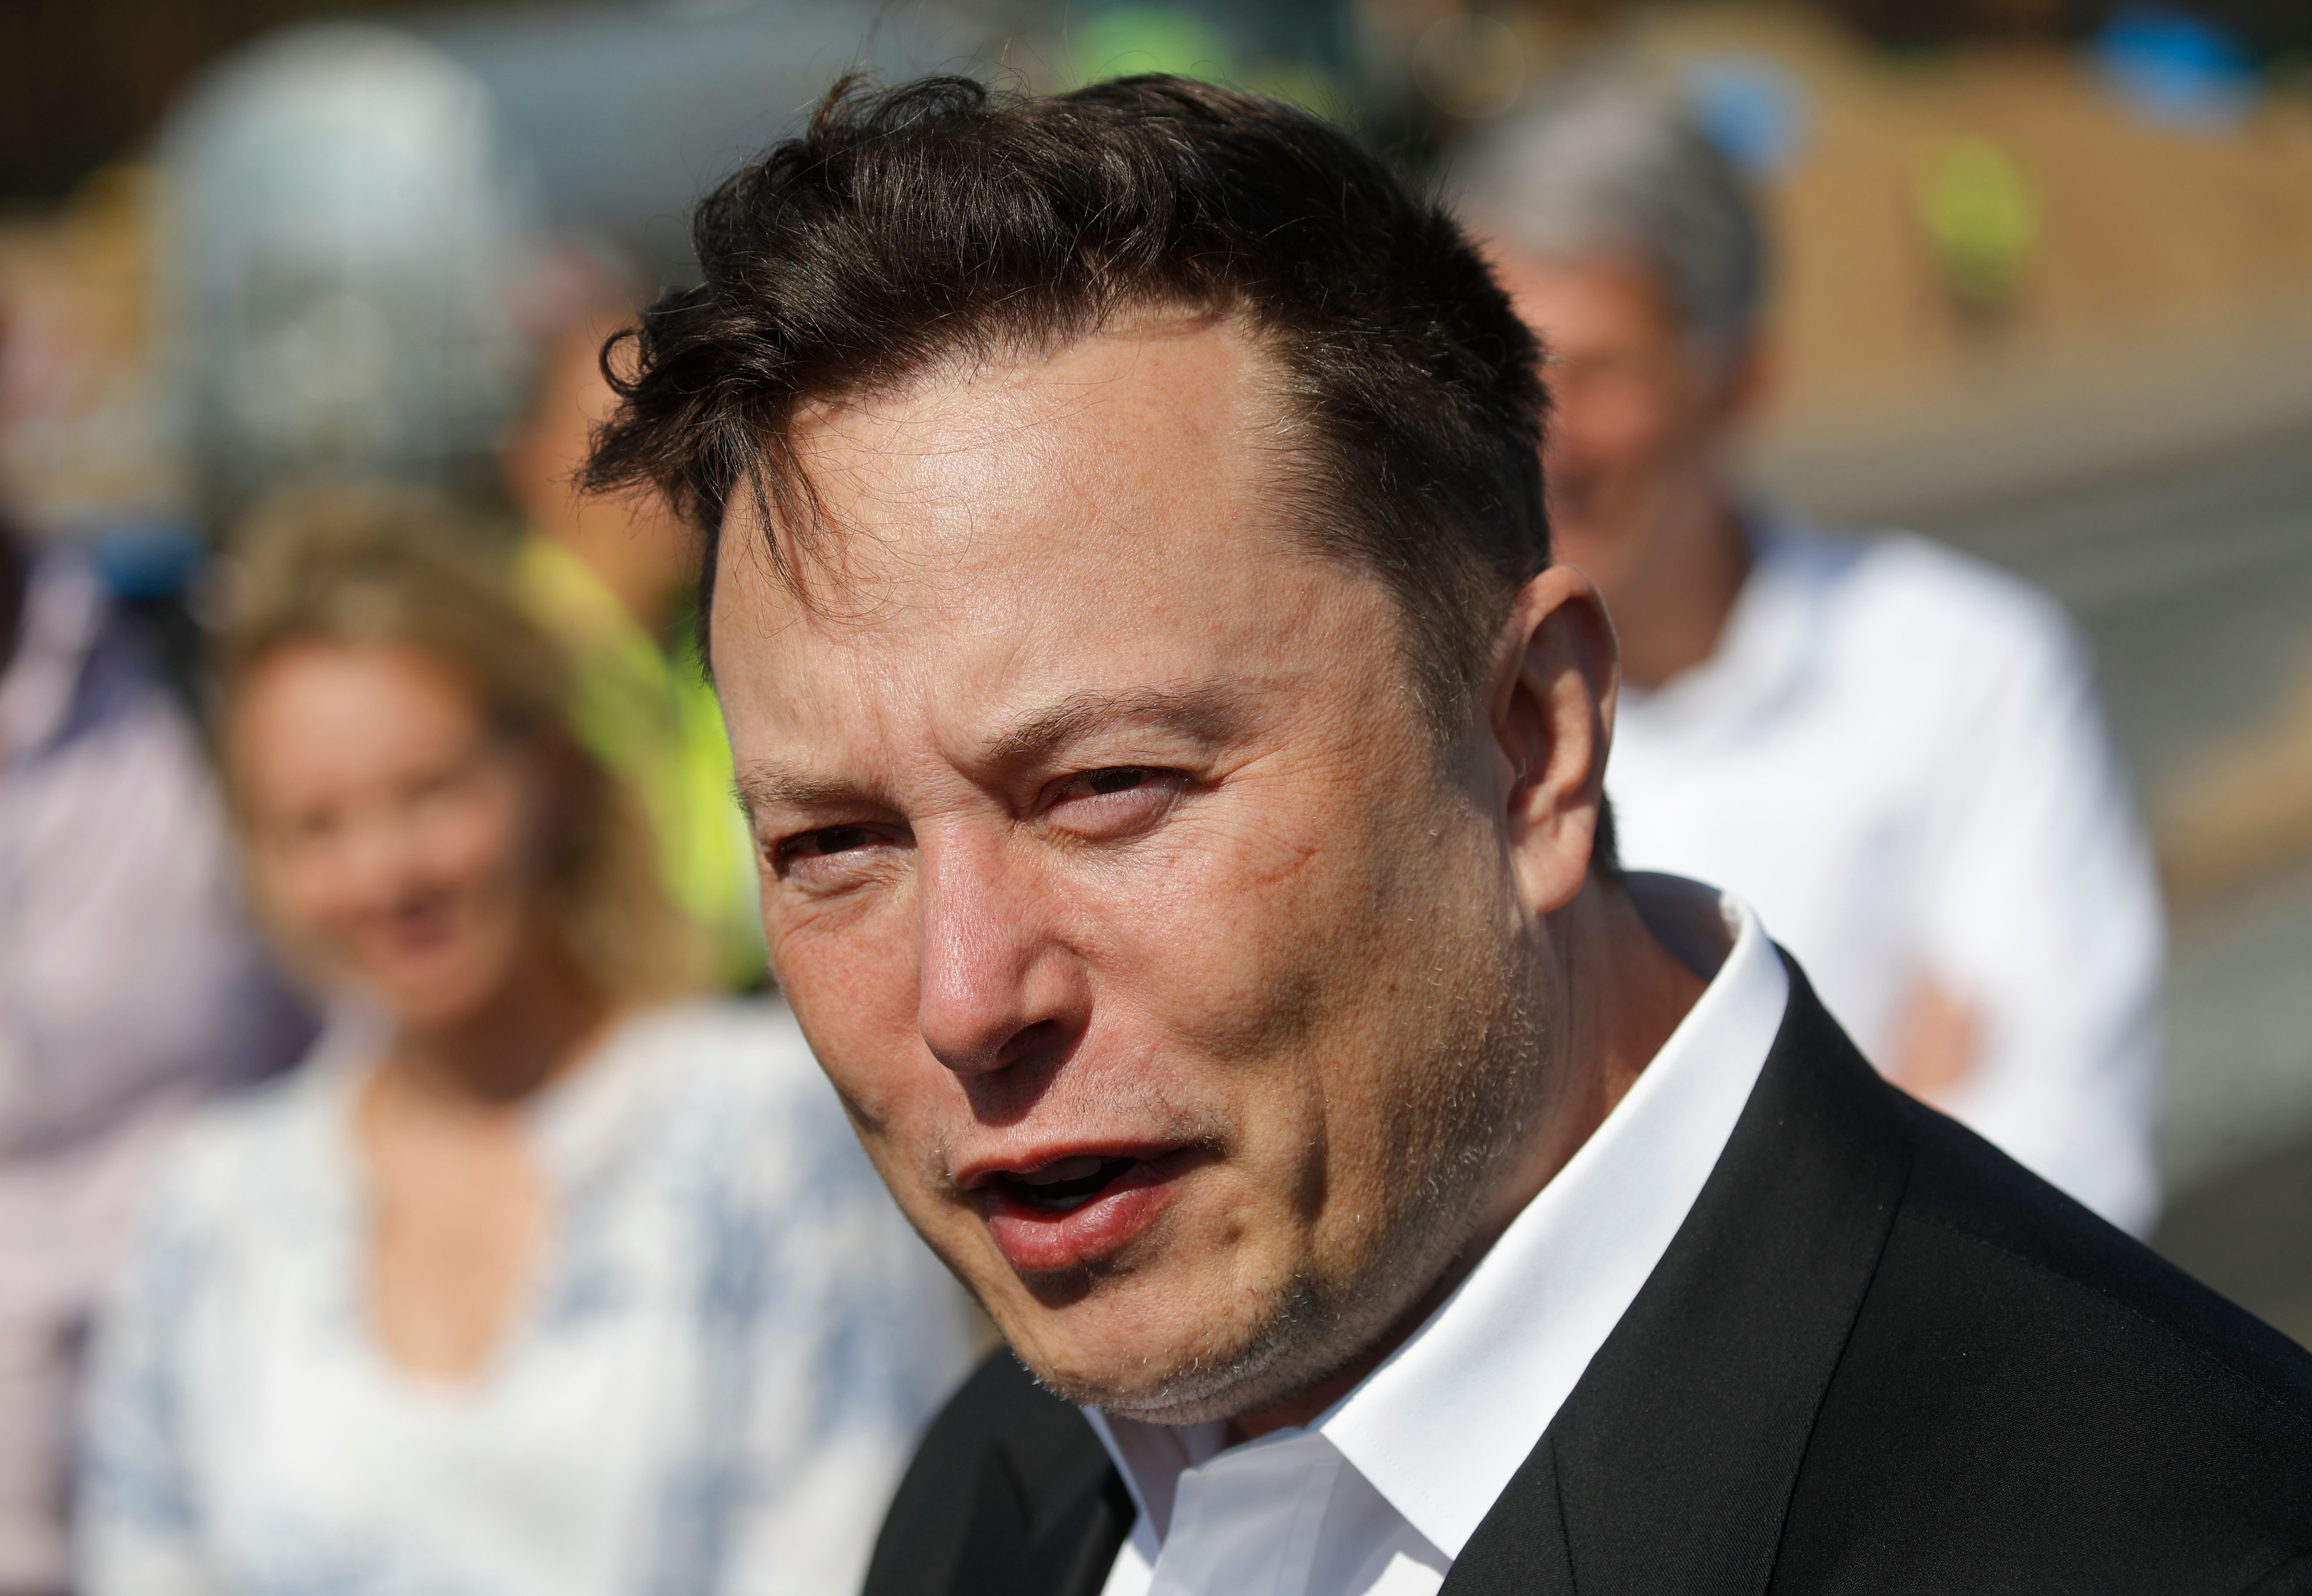 Elon Musk ha superado por 1 mil 500 millones de dólares a la fortuna de Jeff Bezos, fundador de Amazon quien era desde el 2017 el hombre más rico del mundo. (Foto Prensa Libre: AFP)